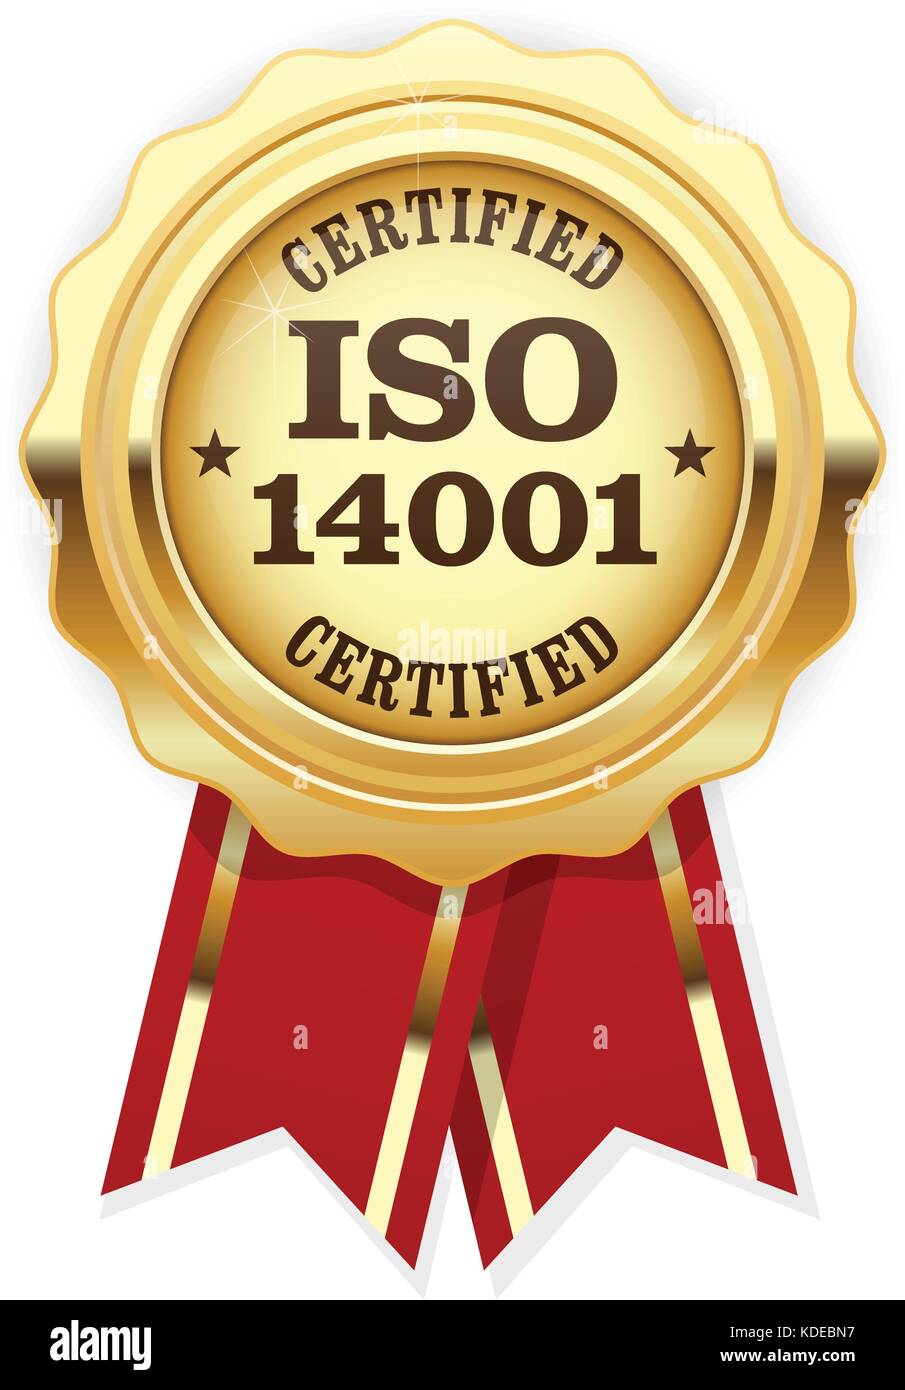 Iso 14001 zertifiziert - Qualität standard Golden Seal, Umweltmanagement Stock Vektor